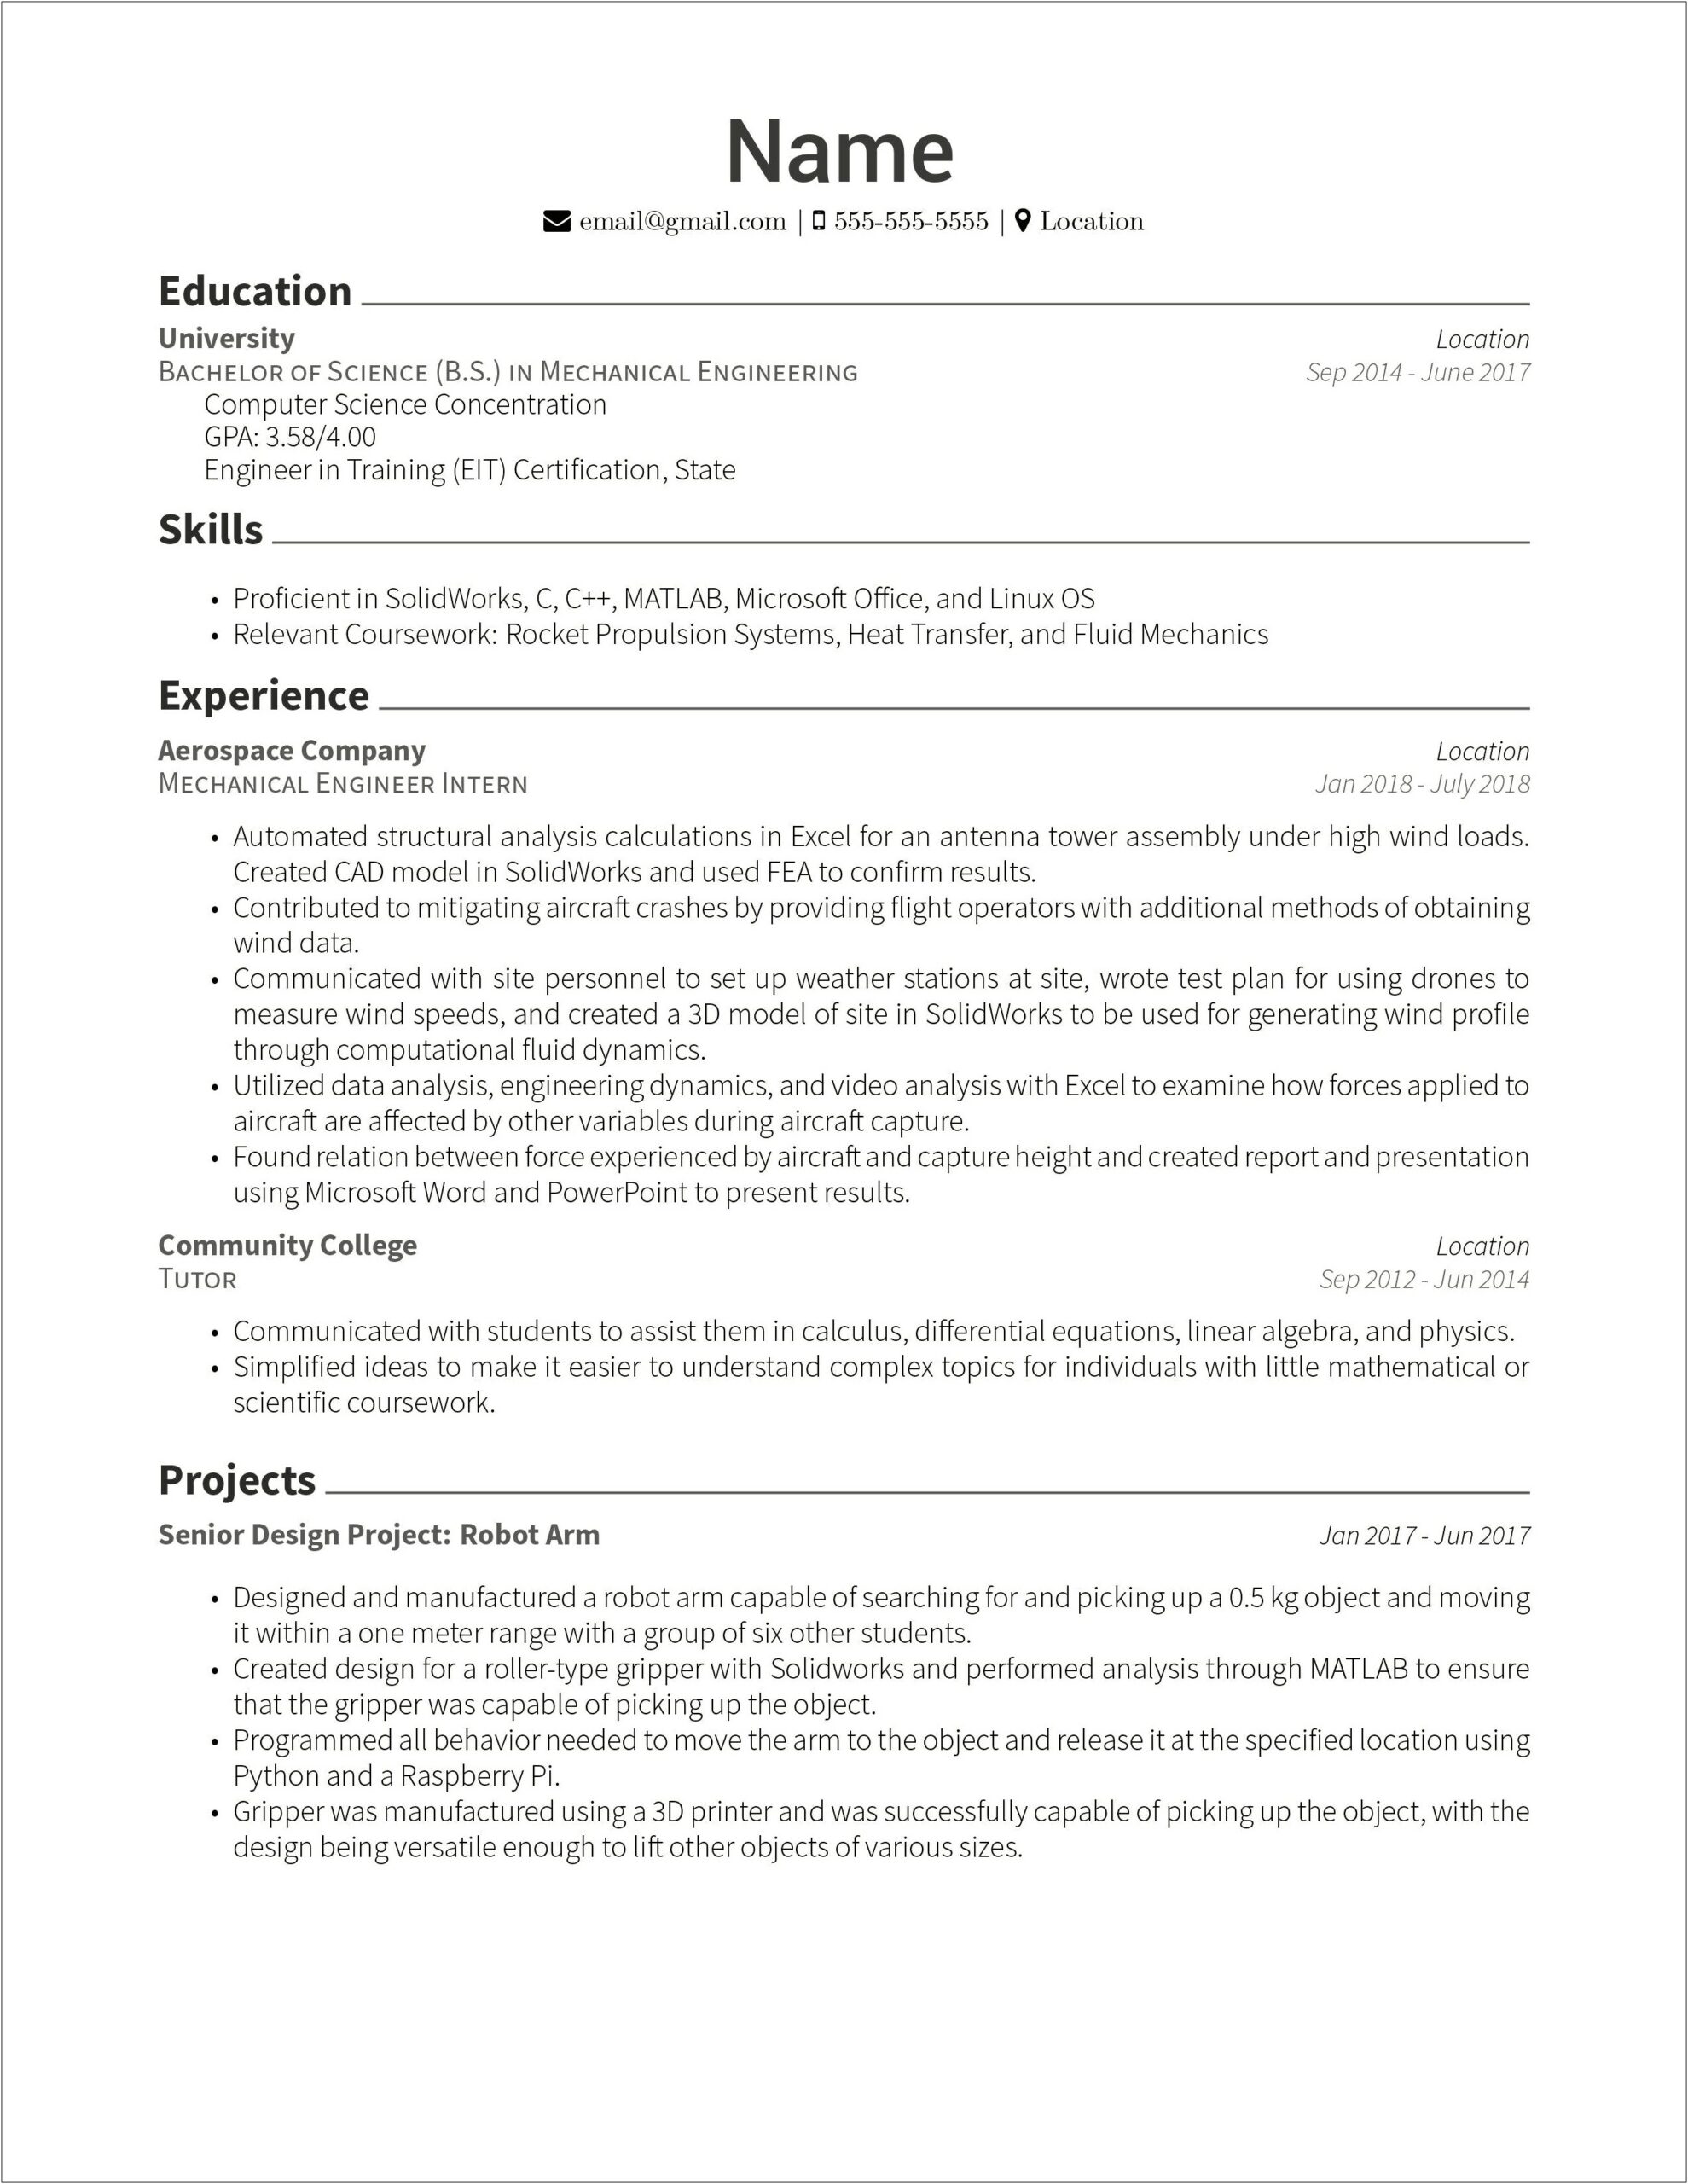 Best Resume For Entry Level Engineer Mediam